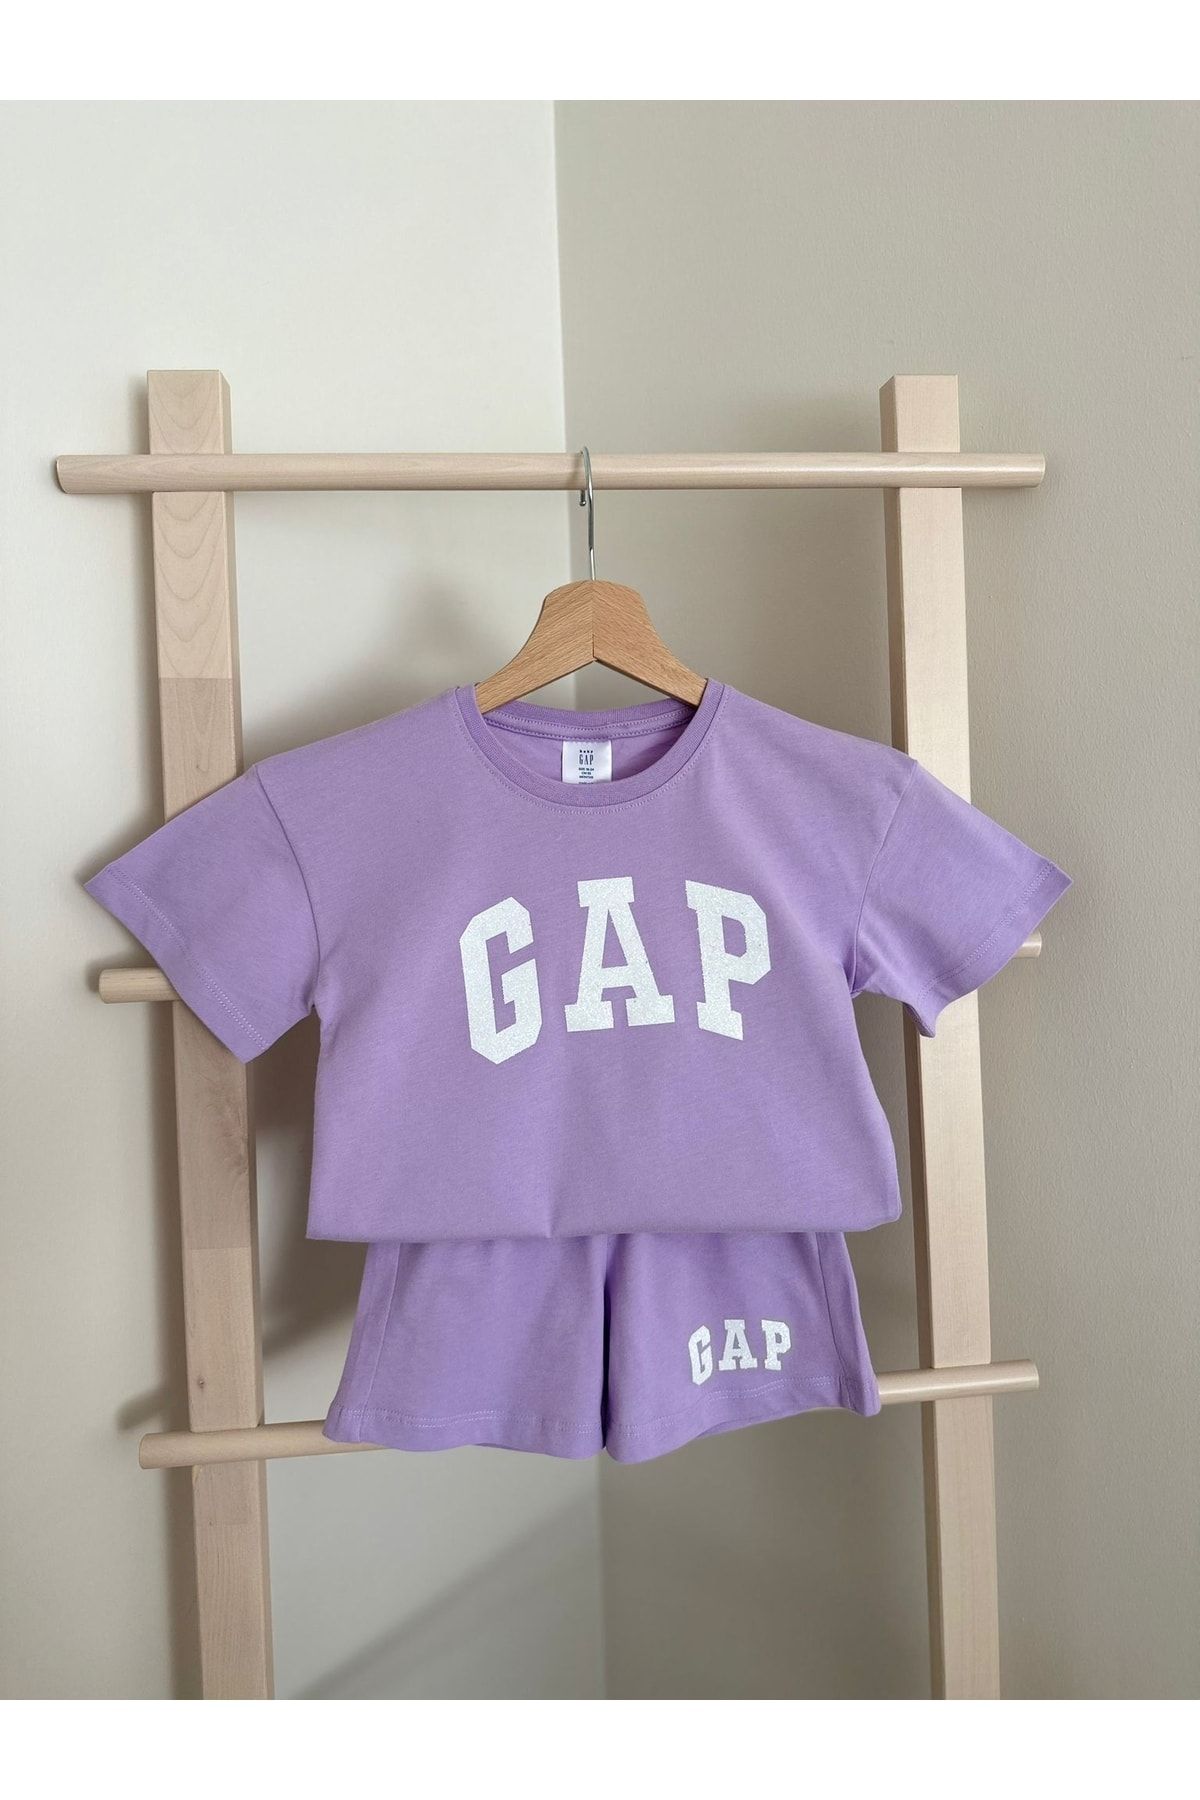 GAP Premium Kalite Gap Kız Çocuk Takım - Kız Çocuk Alt Üst Gap Takım